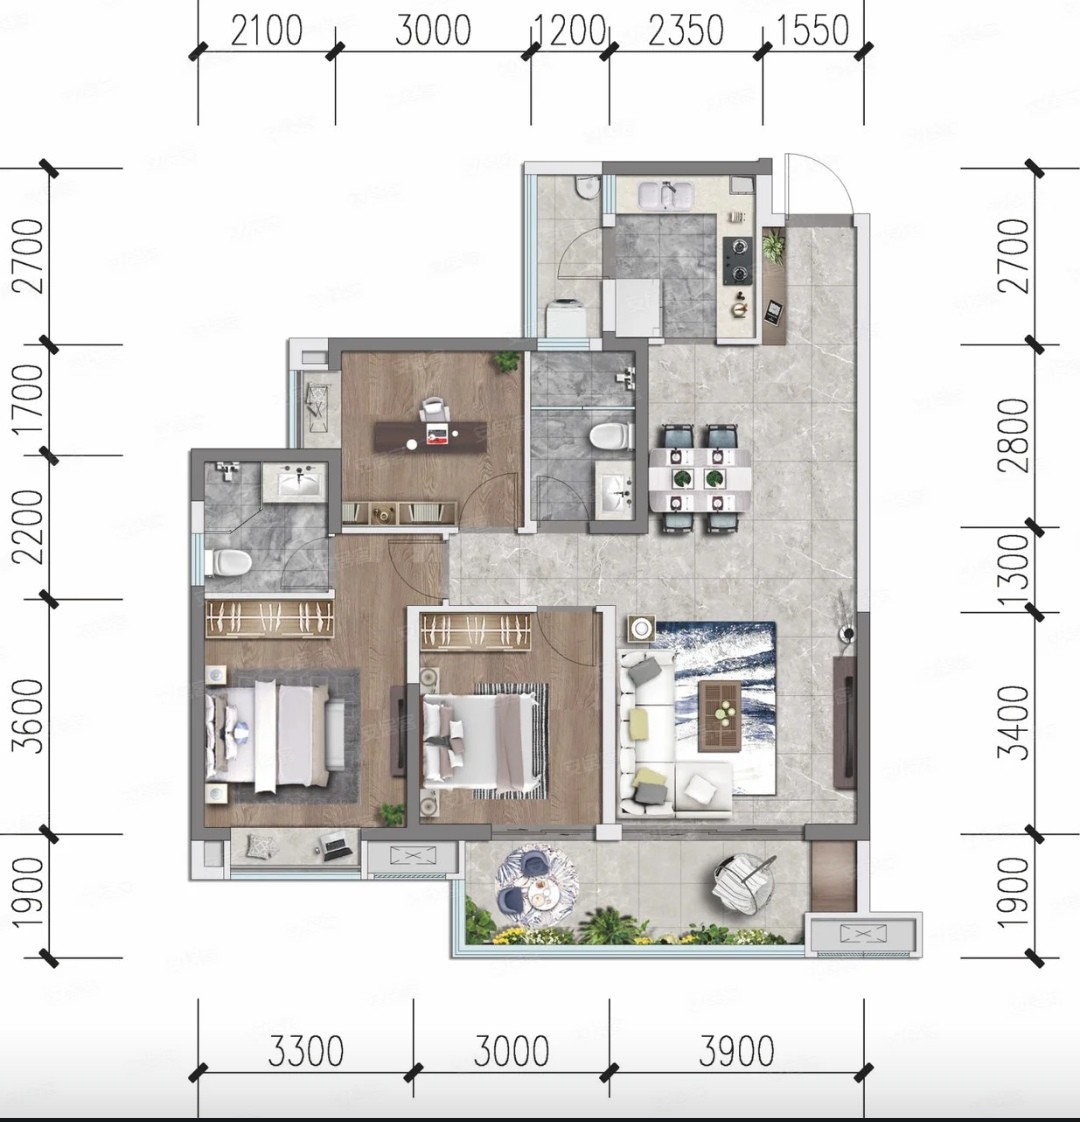 109美式三房装修效果图,109平方米美式风格装修案例效果图-美广网